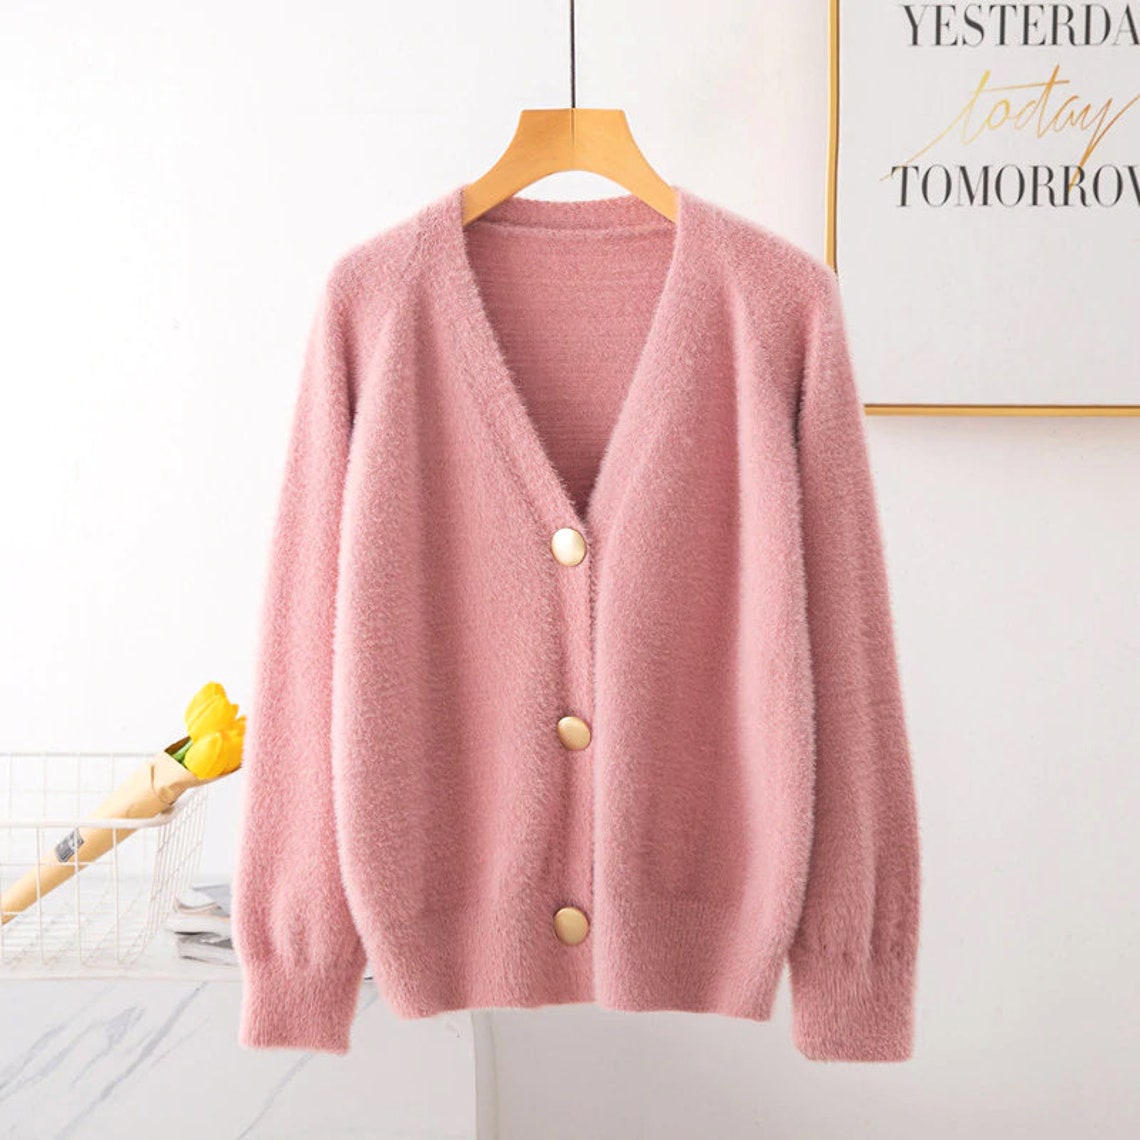 Wool Sweater Cardigan Long Sleeve Outwear | Etsy